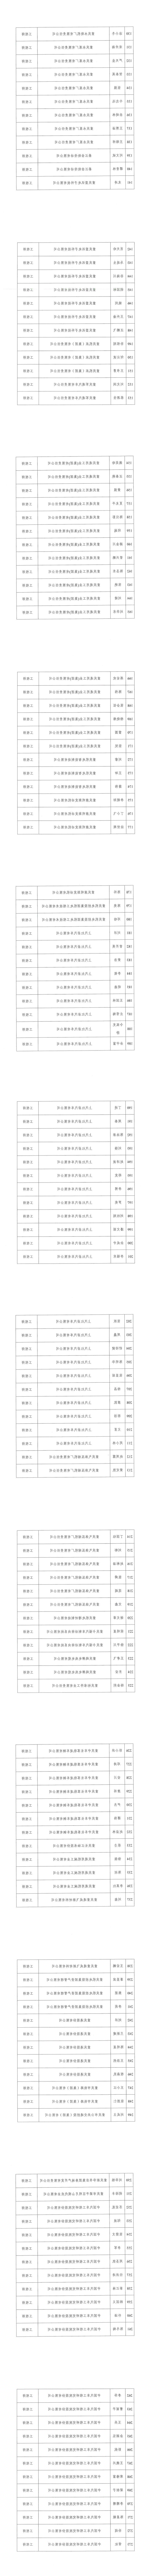 2023年重庆市工程技术机械电气专业中初级职称评审通过人员公示_01.jpg